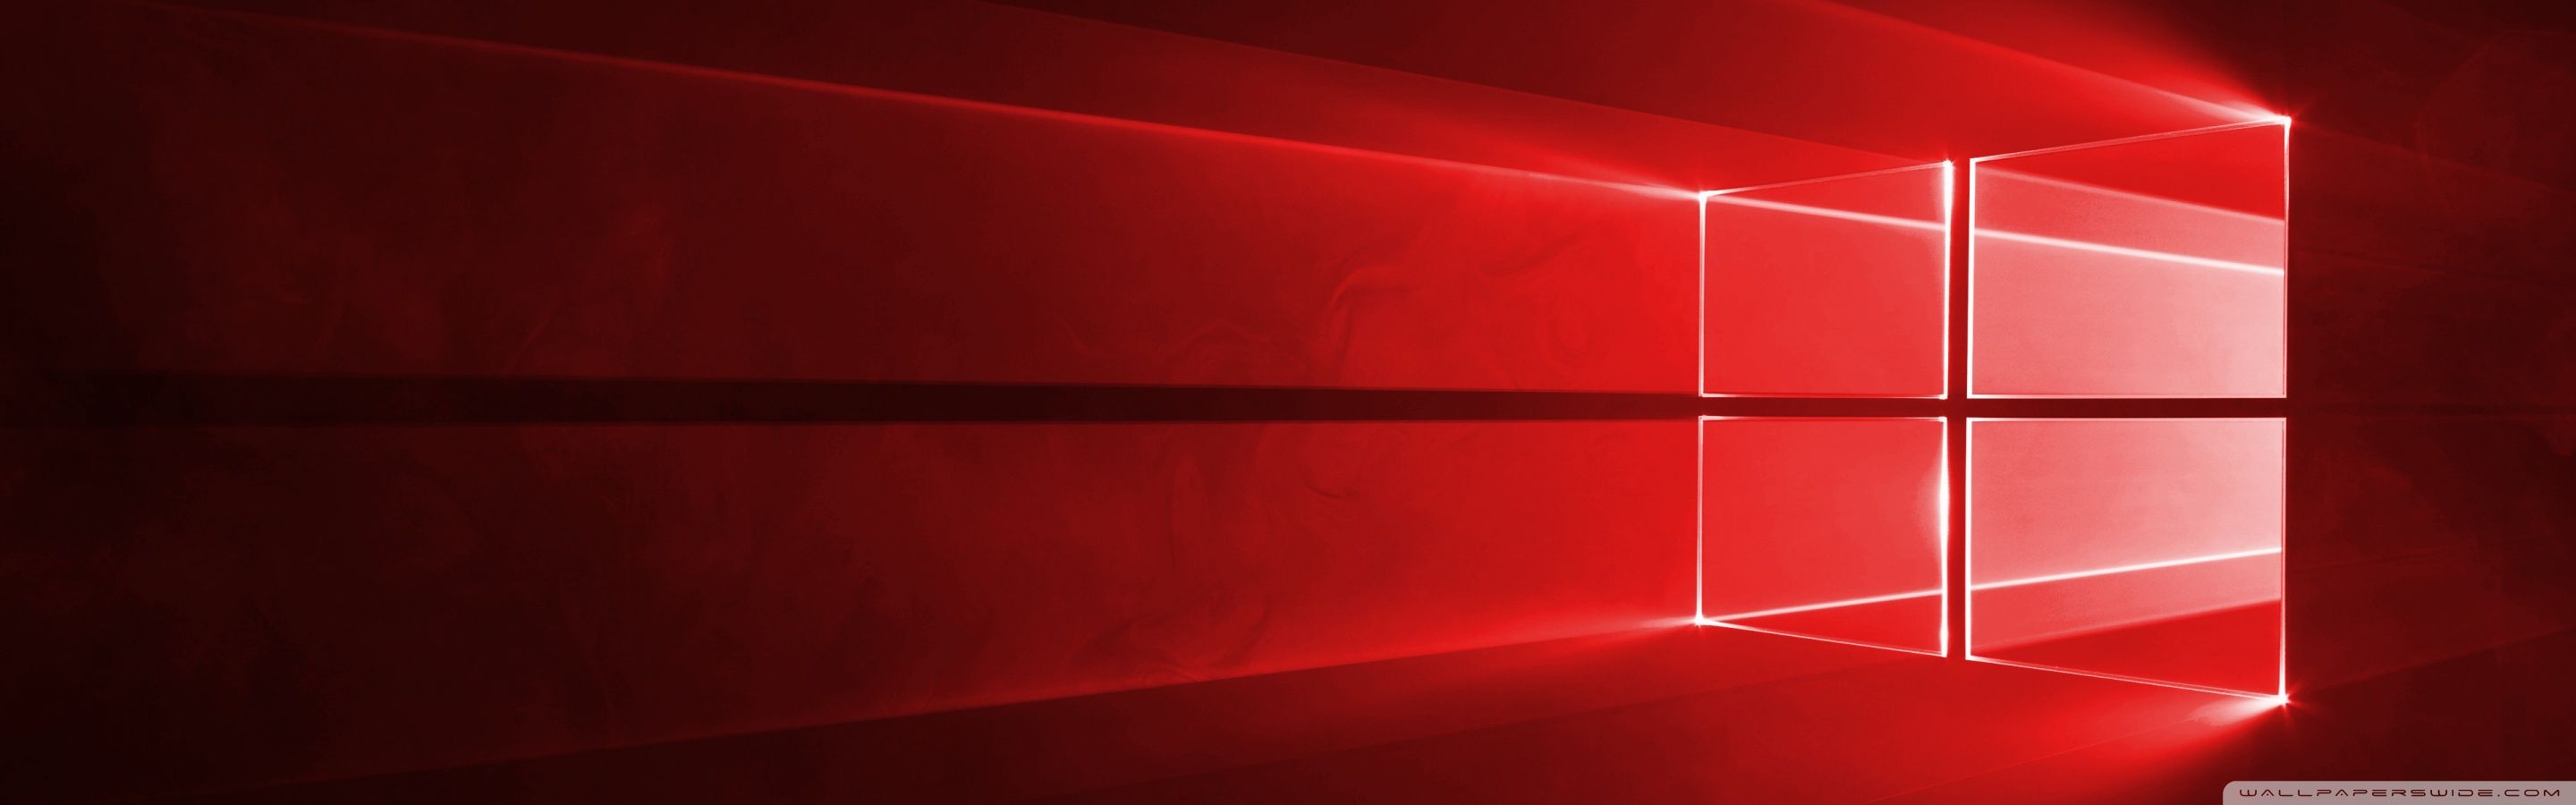 Windows 10 Red in 4K Ultra HD Desktop .wallpaperwide.com